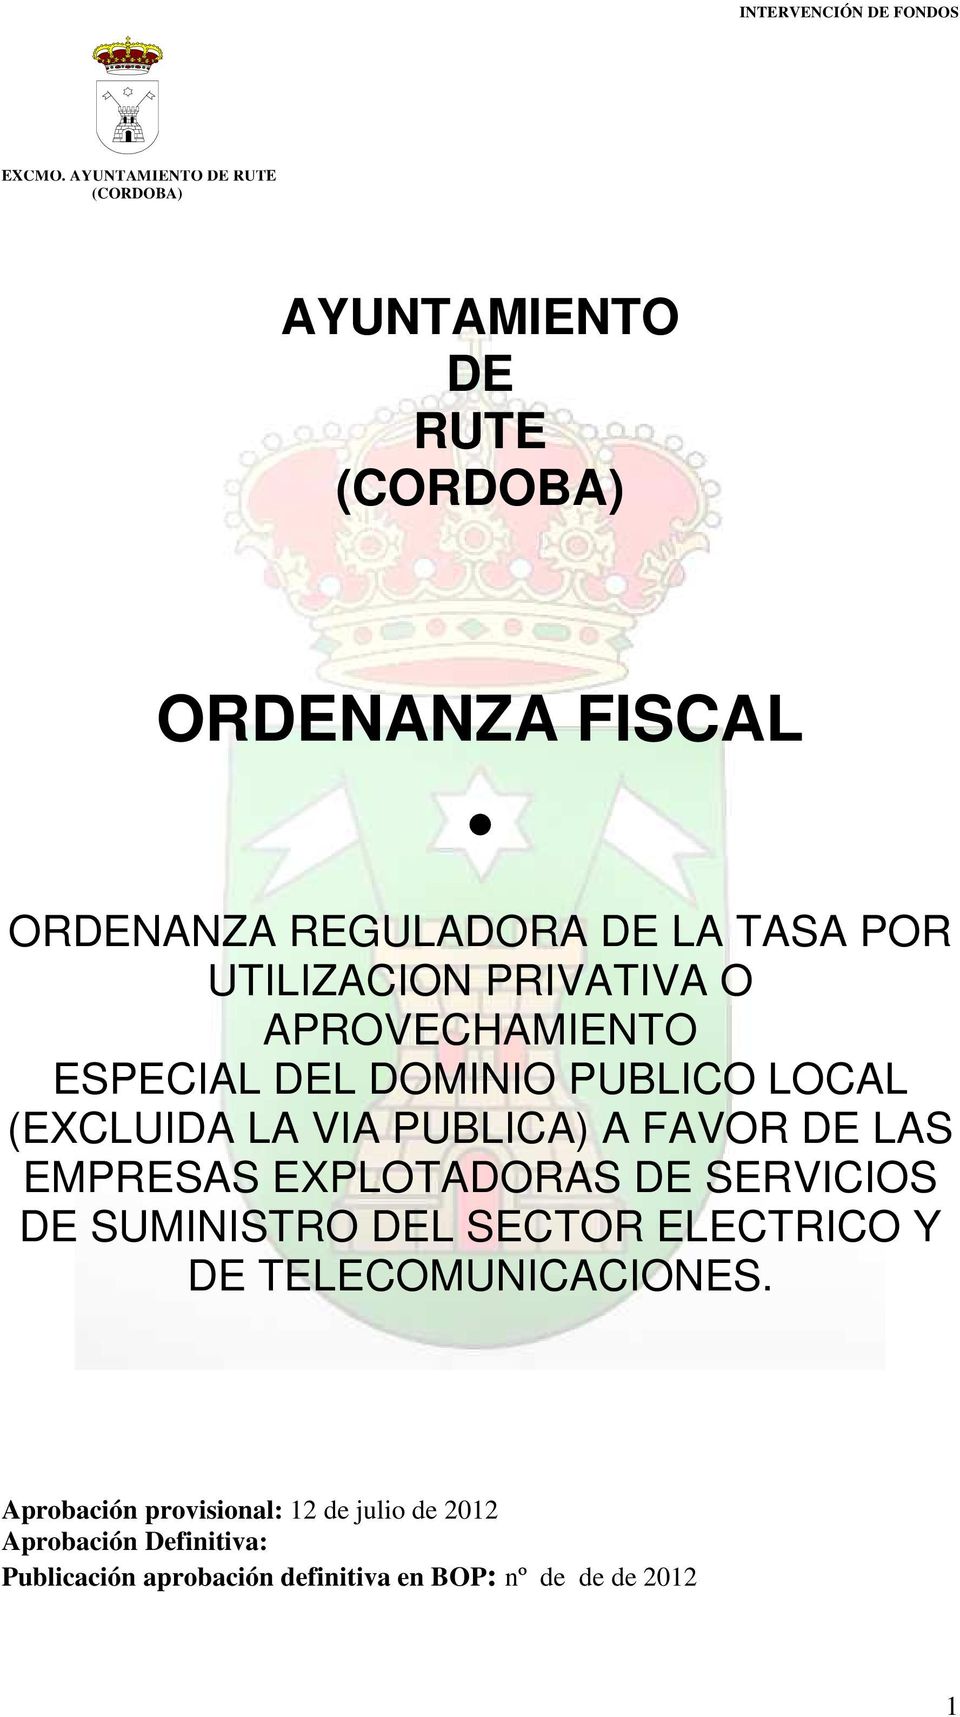 EXPLOTADORAS DE SERVICIOS DE SUMINISTRO DEL SECTOR ELECTRICO Y DE TELECOMUNICACIONES.